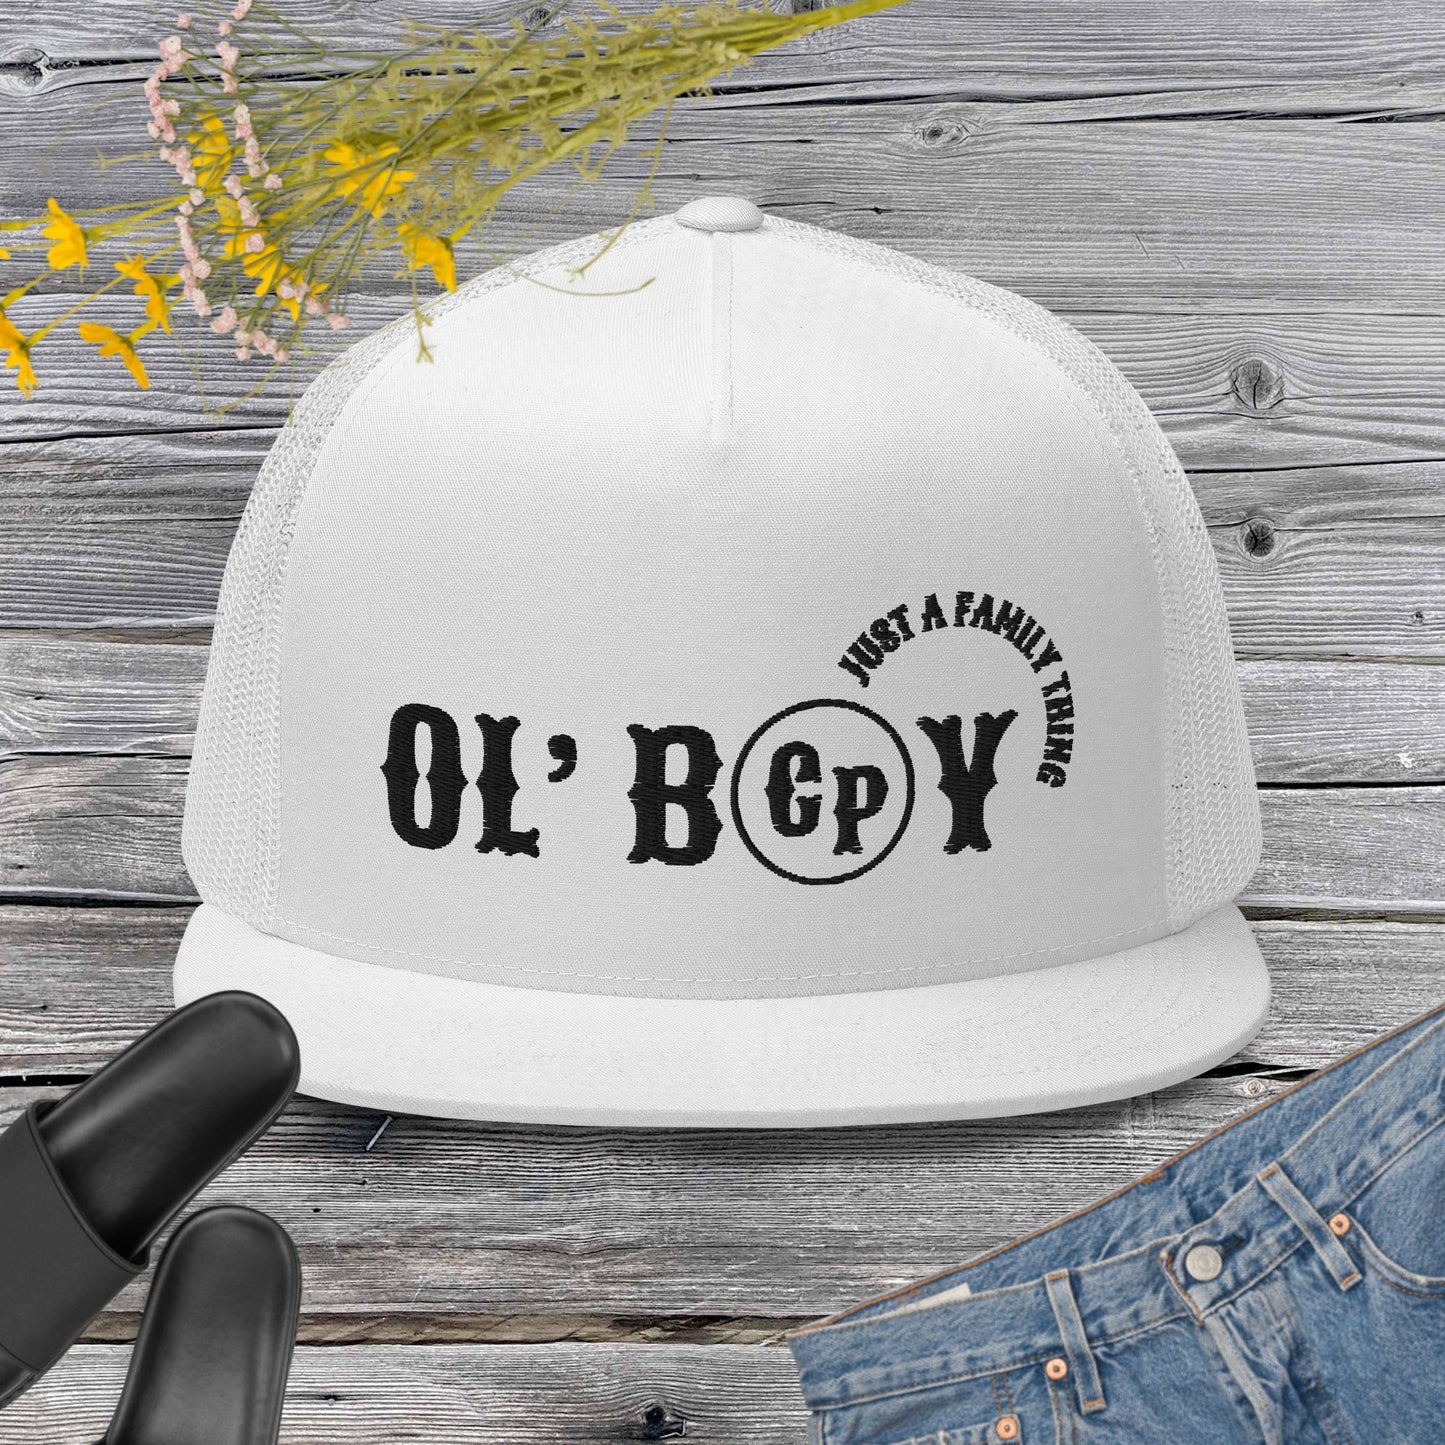 THE OL BOY HAT